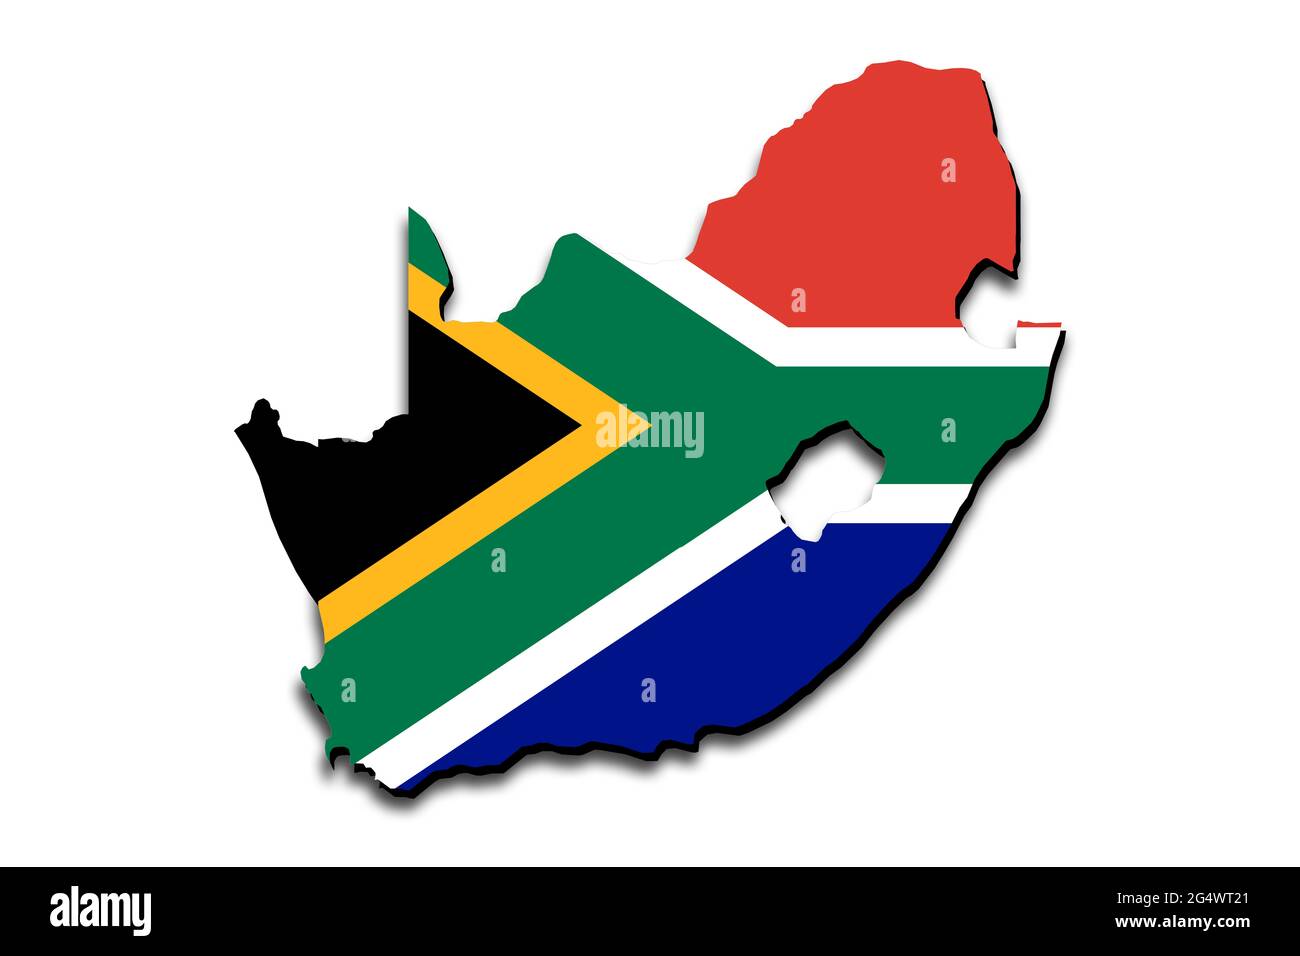 Mappa del Sud Africa con la bandiera nazionale sovrapposta al paese. Grafica 3D che crea un'ombra sullo sfondo bianco Foto Stock